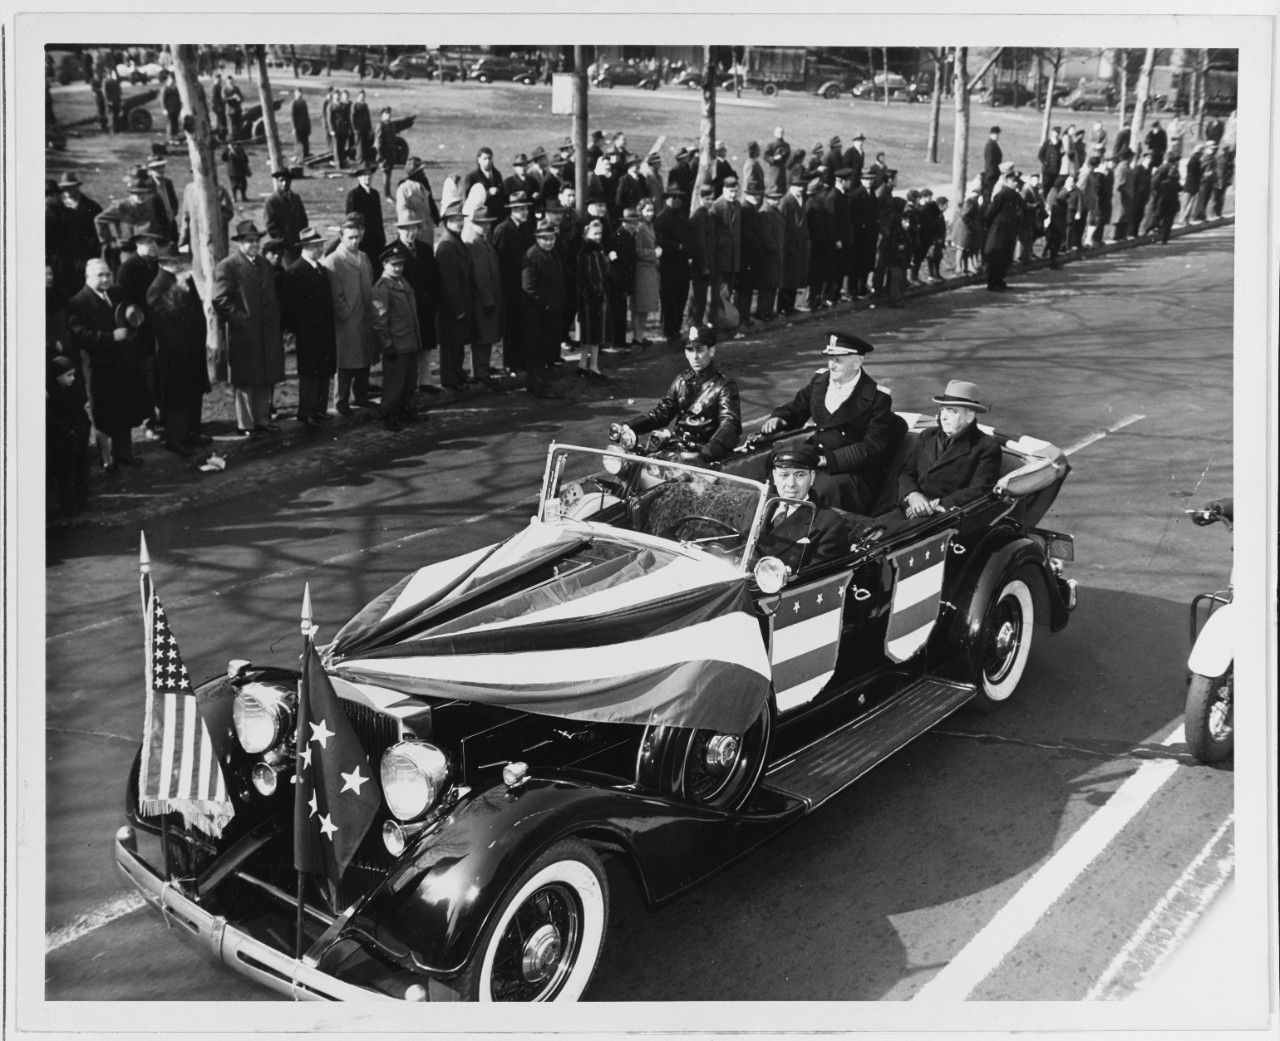 Fleet Admiral Nimitz Rides in a Parade